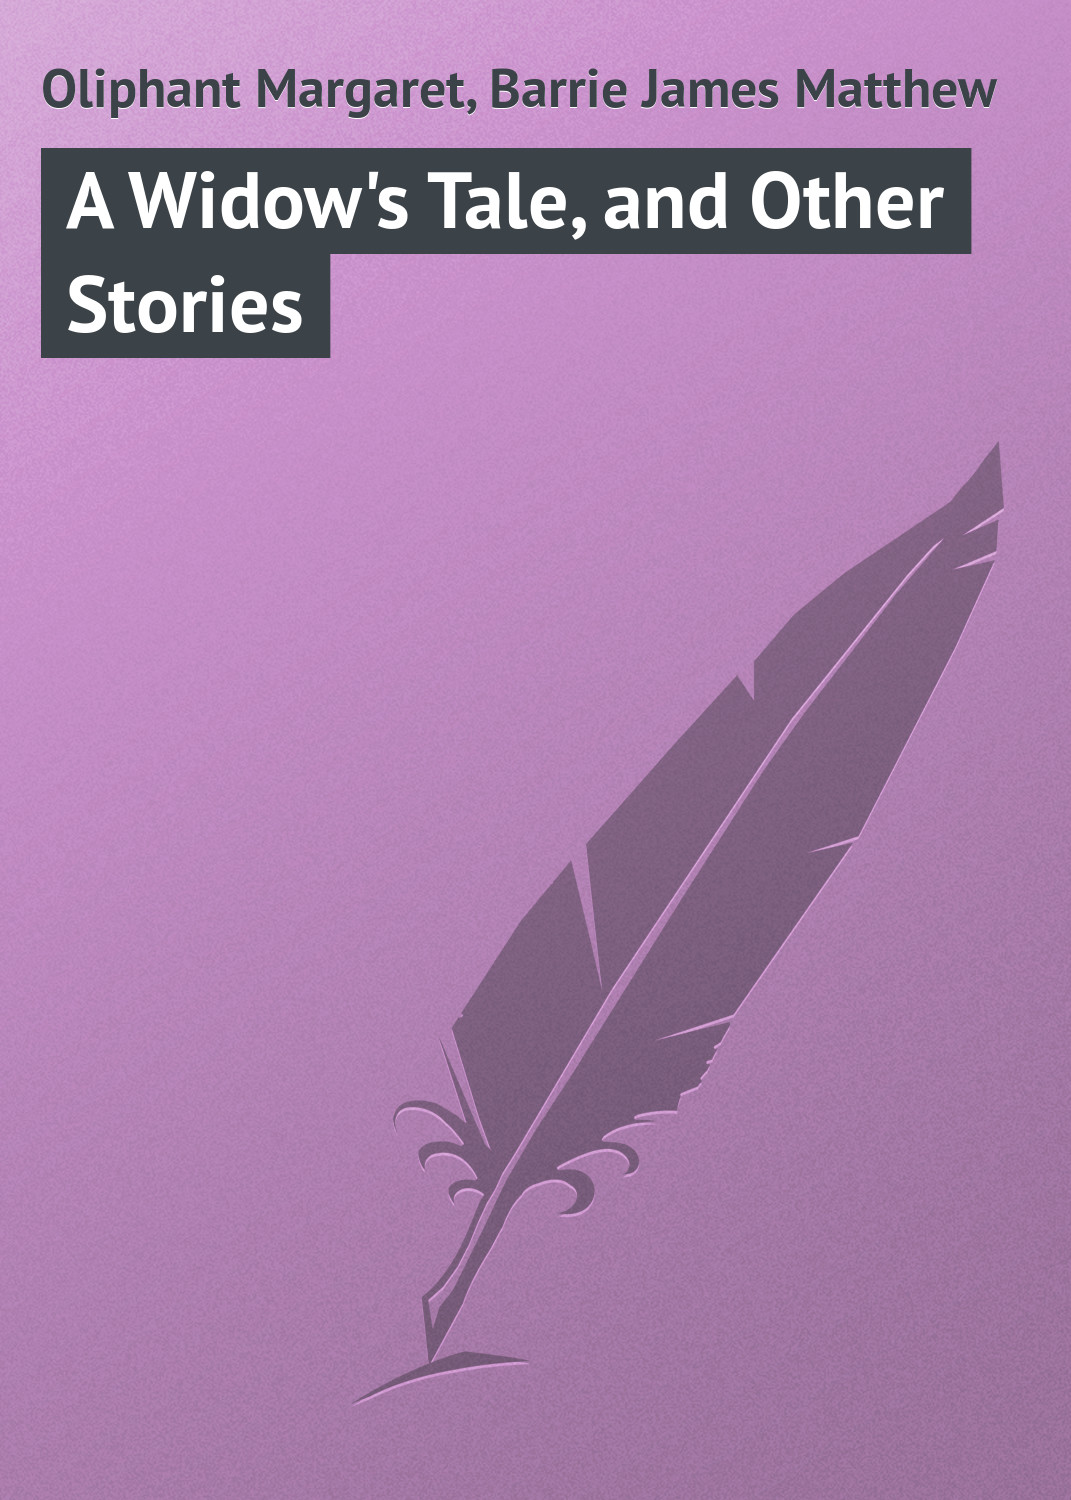 Книга A Widow's Tale, and Other Stories из серии , созданная Margaret Oliphant, James Barrie, может относится к жанру Зарубежная классика. Стоимость электронной книги A Widow's Tale, and Other Stories с идентификатором 23147611 составляет 5.99 руб.